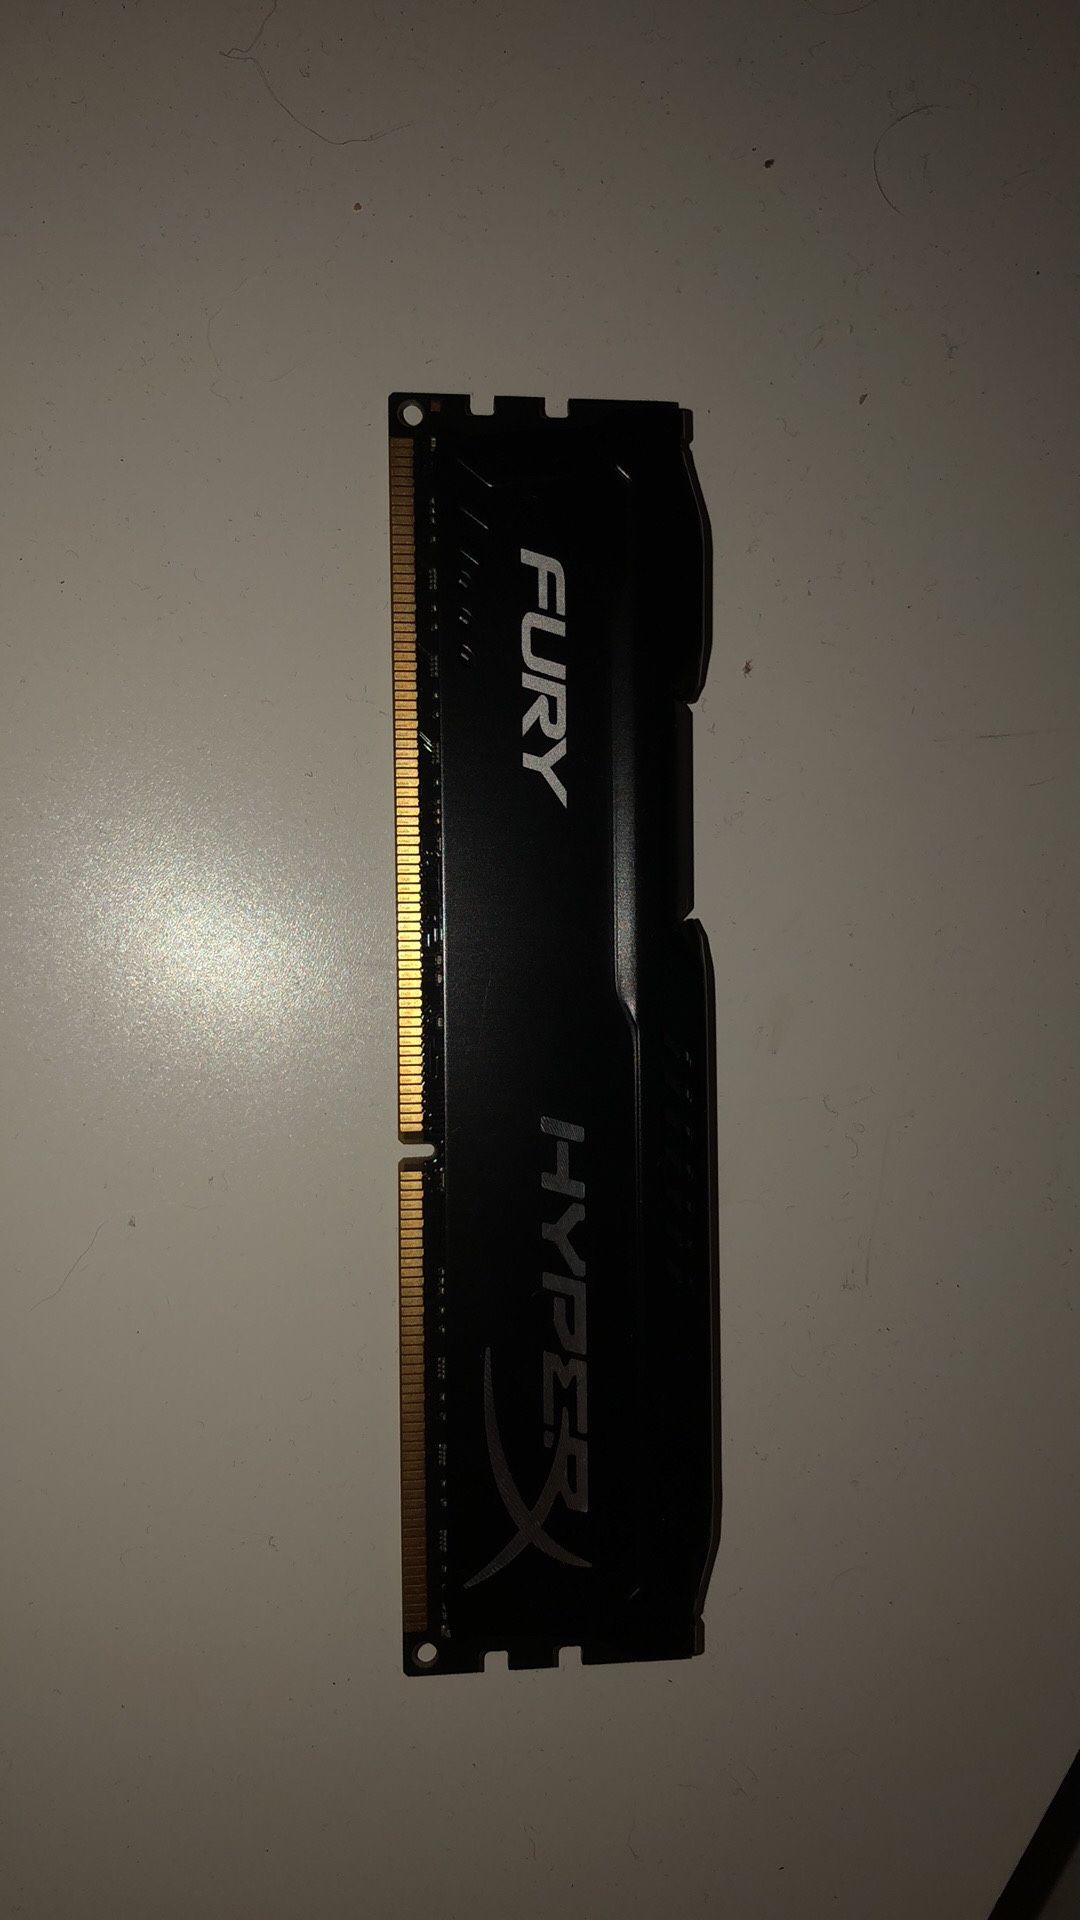 HyperX FURY AND Crucial Plug N Play 16GB DDR3 Ram